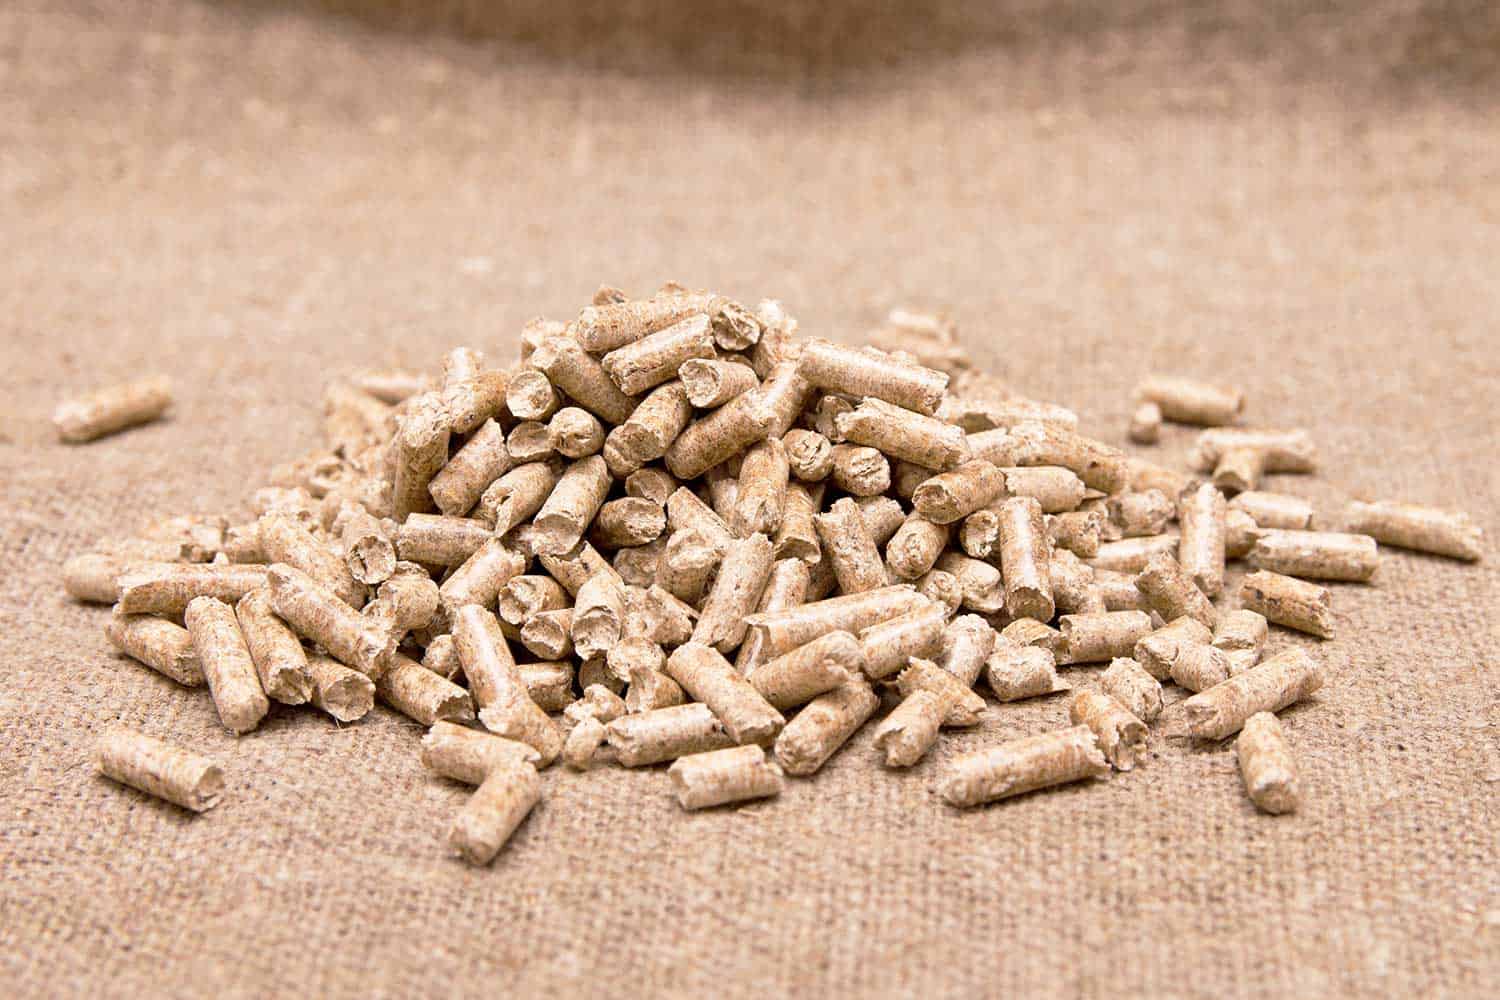 Wood pellets close up